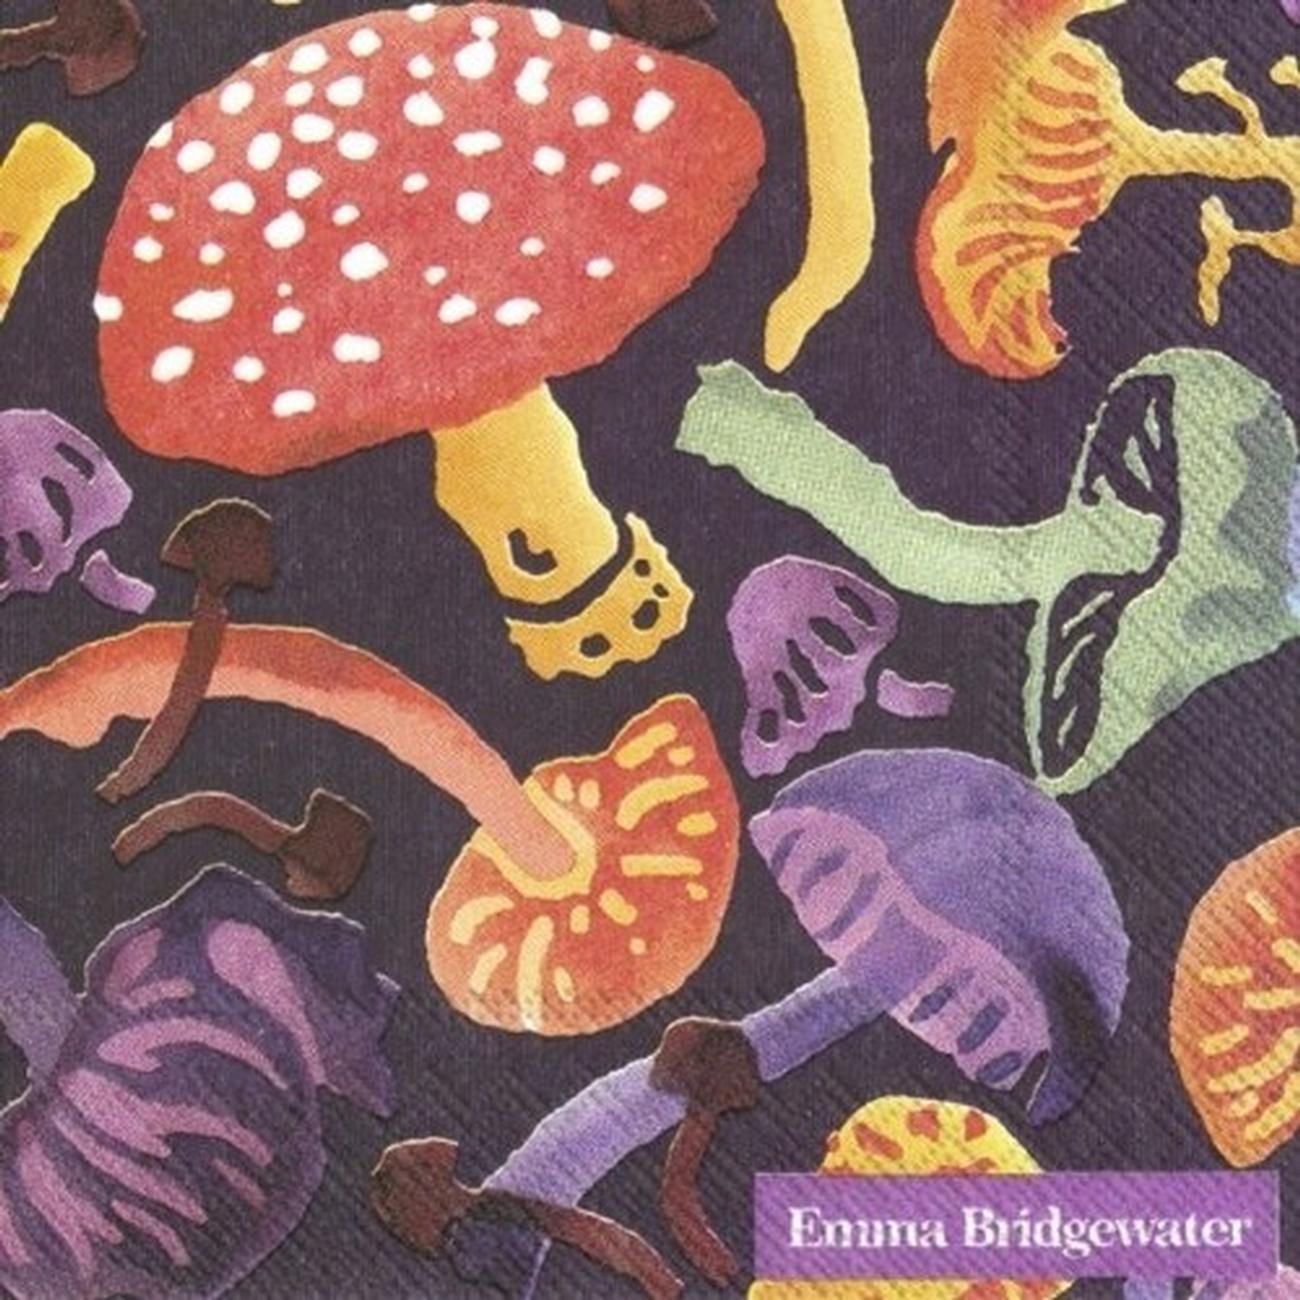 ihr-mushrooms-violet-cocktail-napkins - IHR Cocktail Napkins Emma Bridgewater Wild Mushrooms Violet